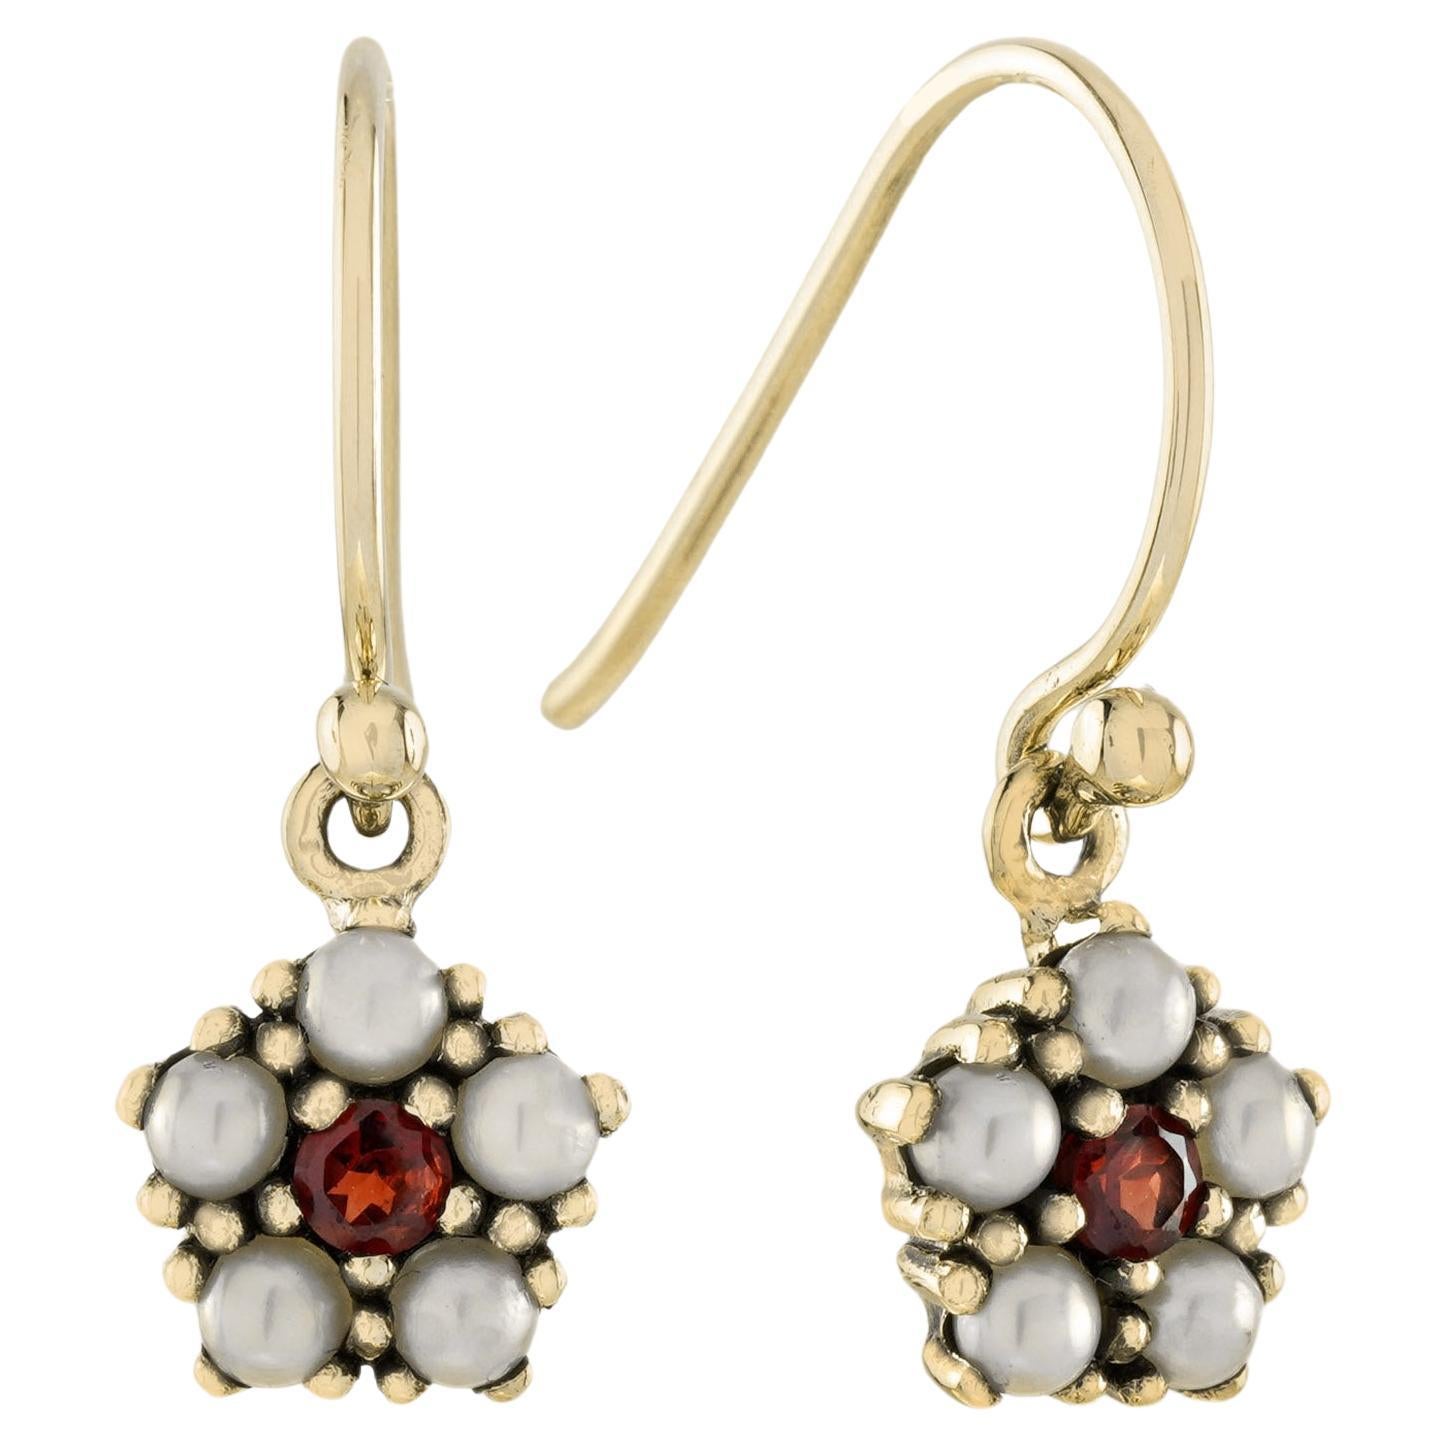 Boucles d'oreilles pendantes en or massif 9K, grenat naturel et perle, style vintage et floral